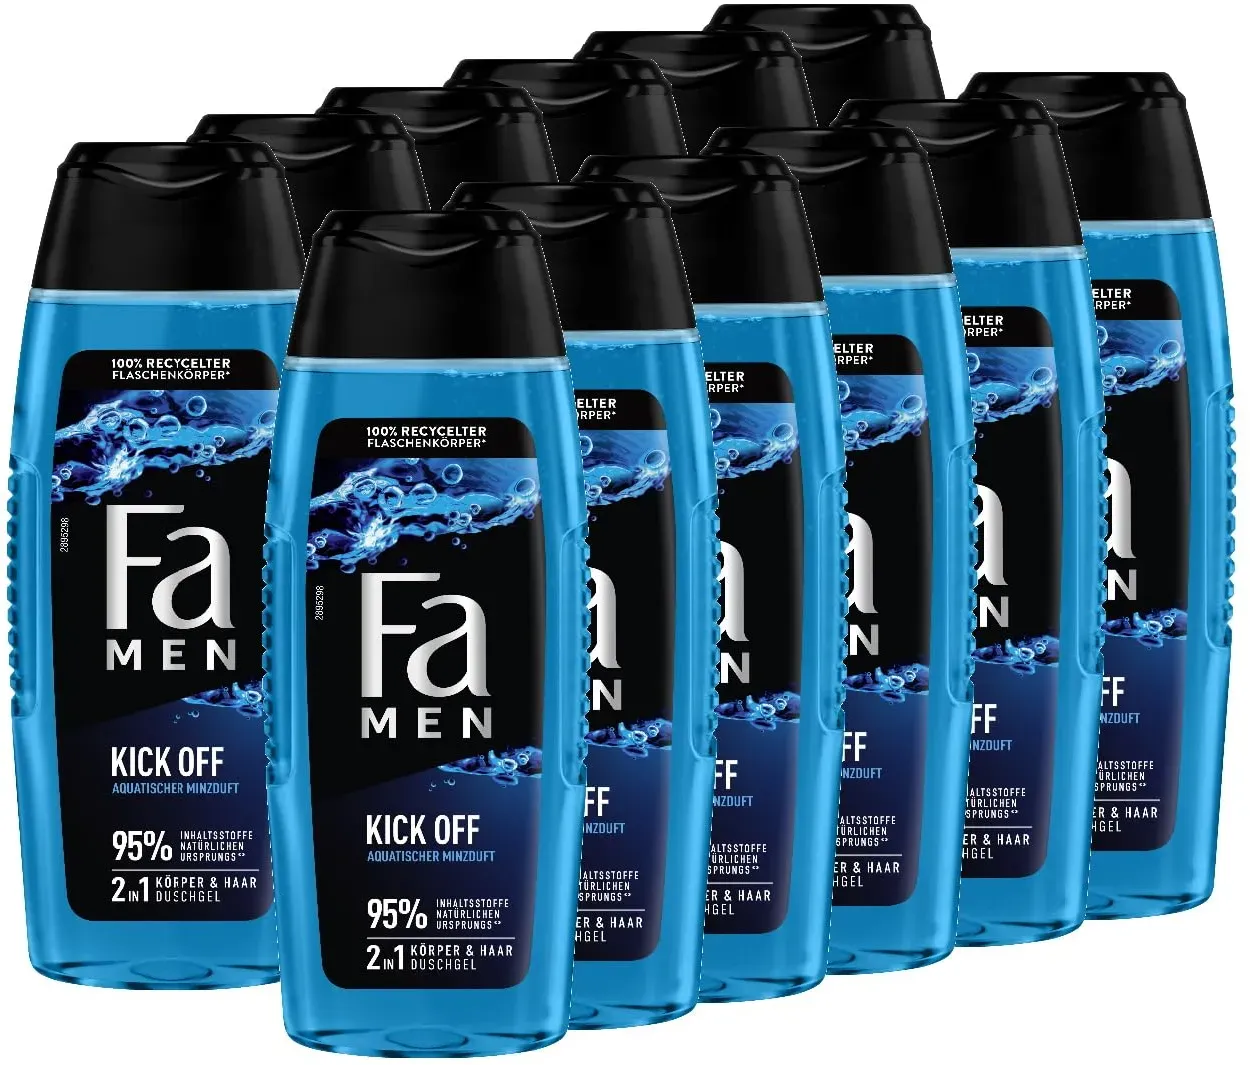 FA Men 2in1 Duschgel Kick Off, 12er Pack (12 x 250 ml) 2in1 Formel für Haare & Körper, aktiviere deine Sinne mit dem intensiven, maskulinfrischen Duft von Eukalyptus und aquatischer Minze